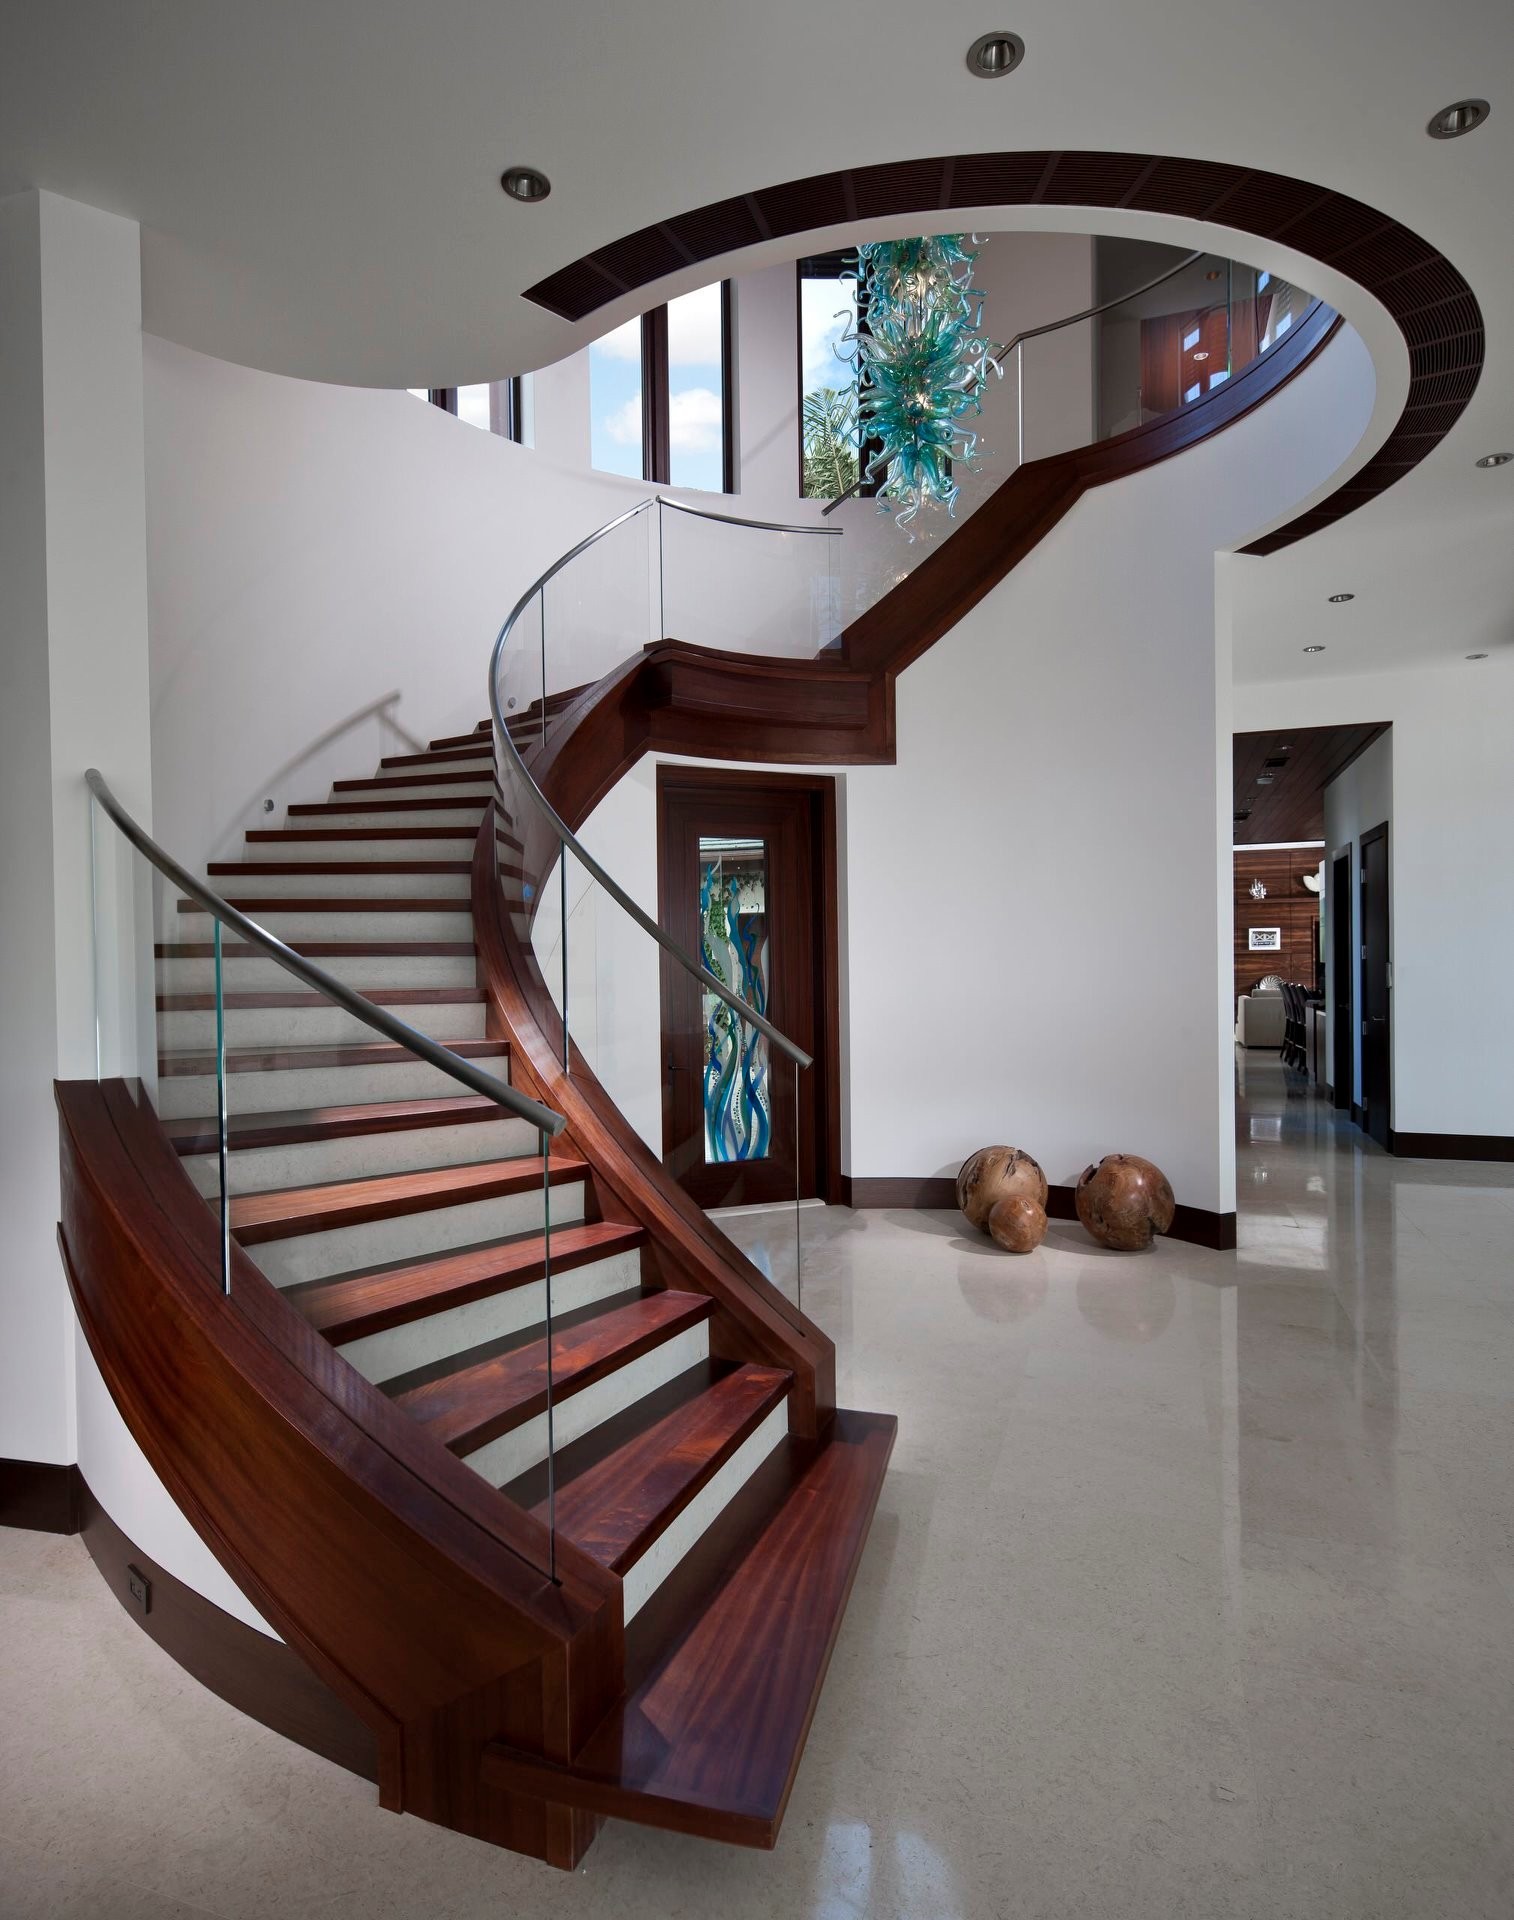 59 idées de designs d'escaliers modernes pour s'inspirer 29